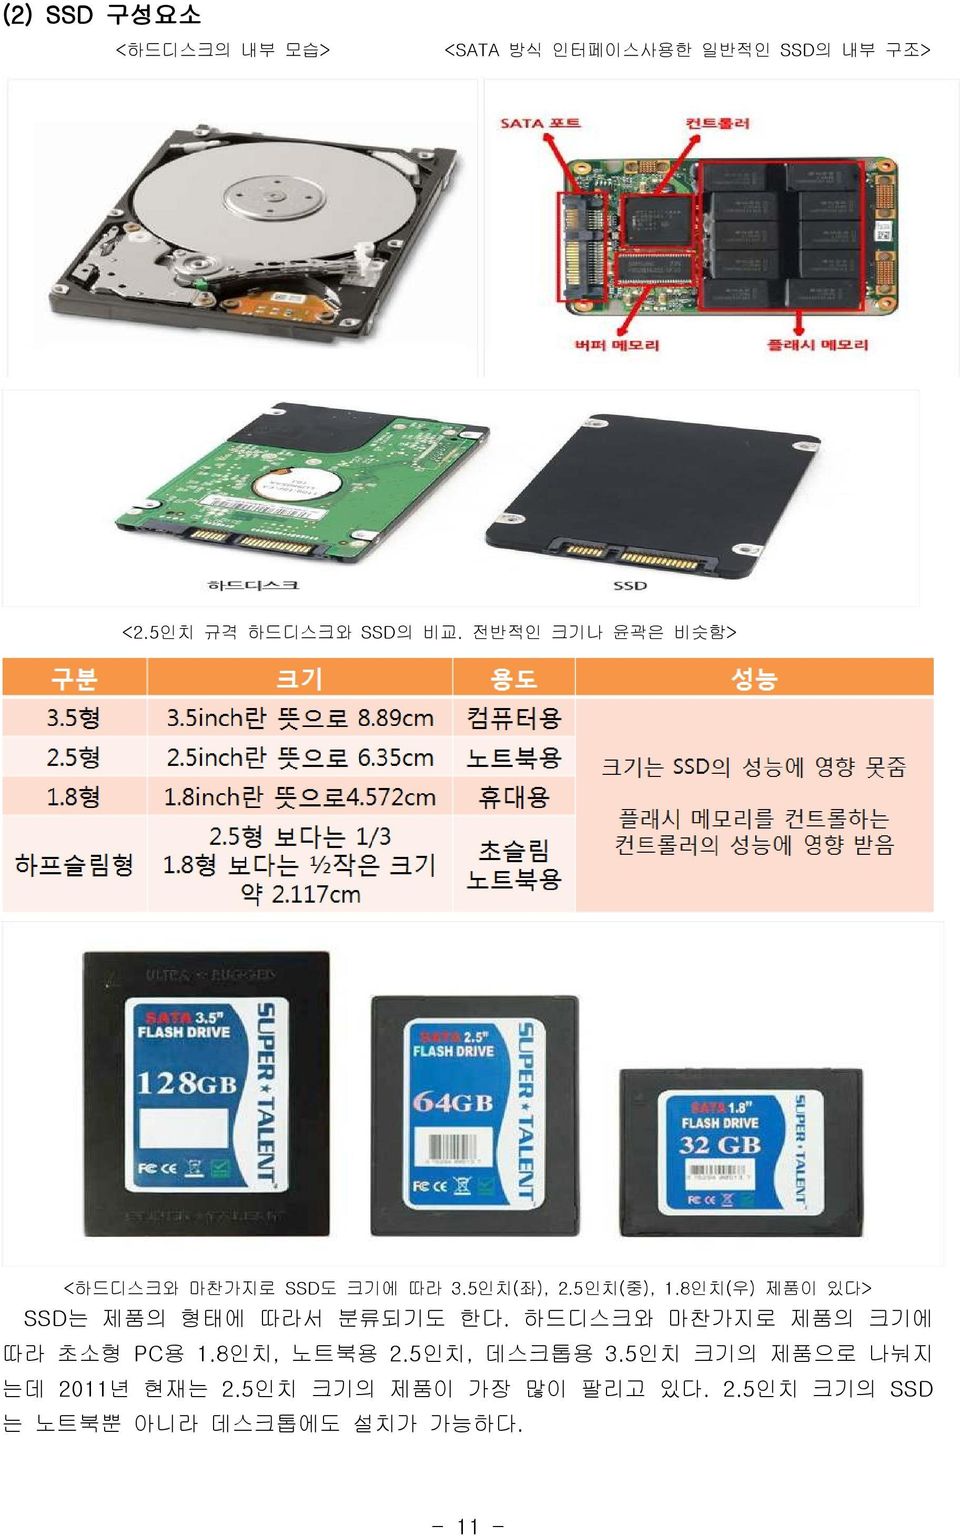 8 인치( 우) 제품이 있다> SSD 는 제품의 형태에 따라서 분류되기도 한다. 하드디스크와 마찬가지로 제품의 크기에 따라 초소형 PC용 1.8 인치, 노트북용 2.